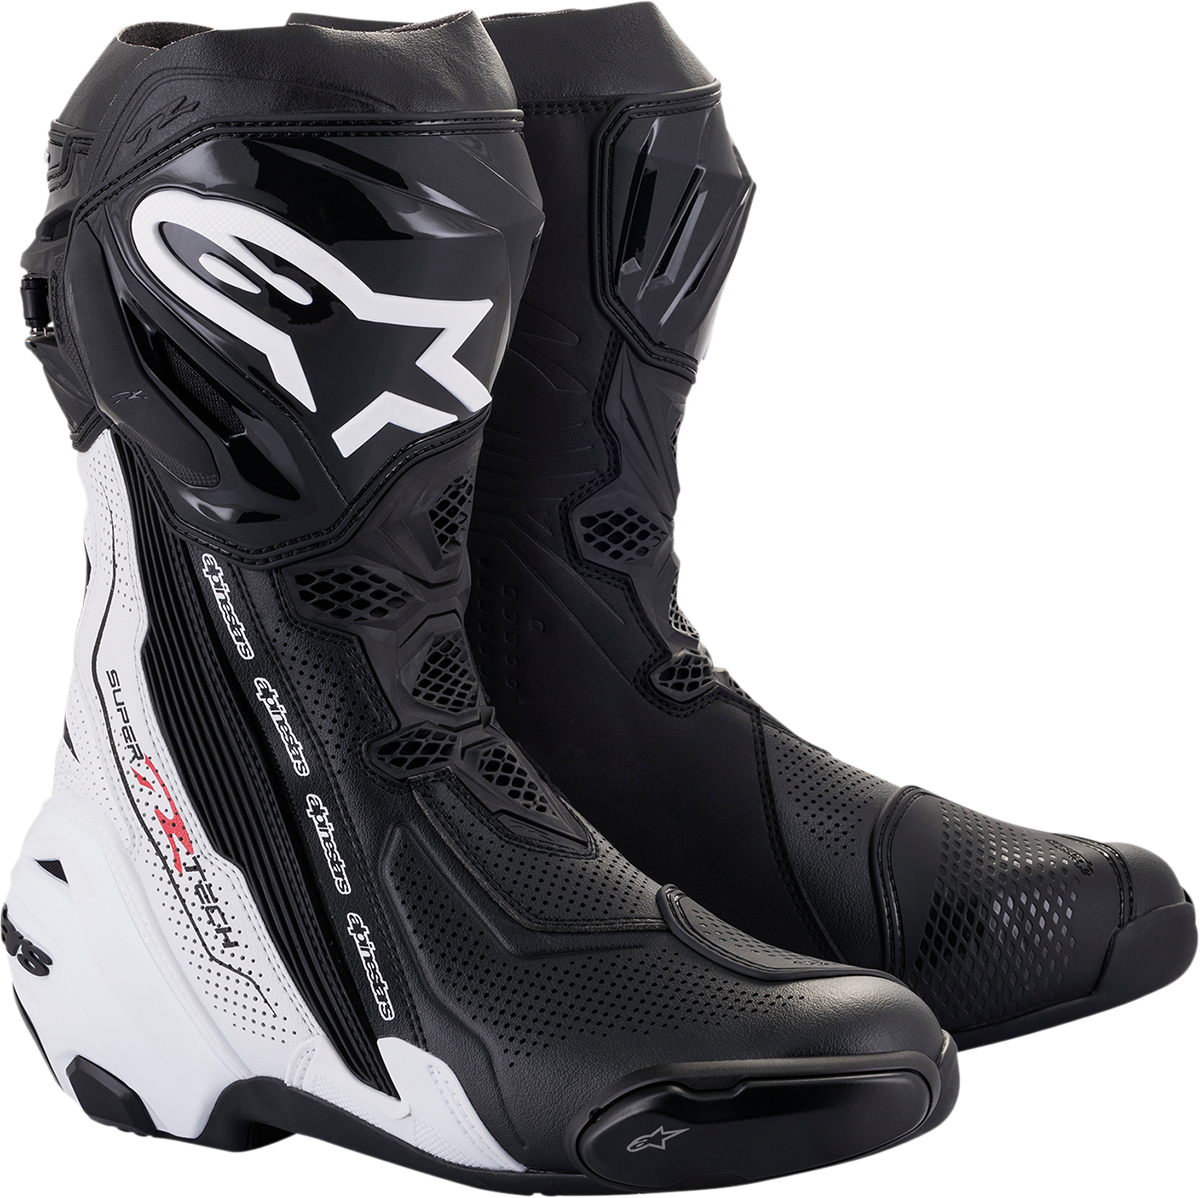 ALPINESTARS Supertech V Boots - Black/White - US 10.5 / EU 45 2220121-12-45